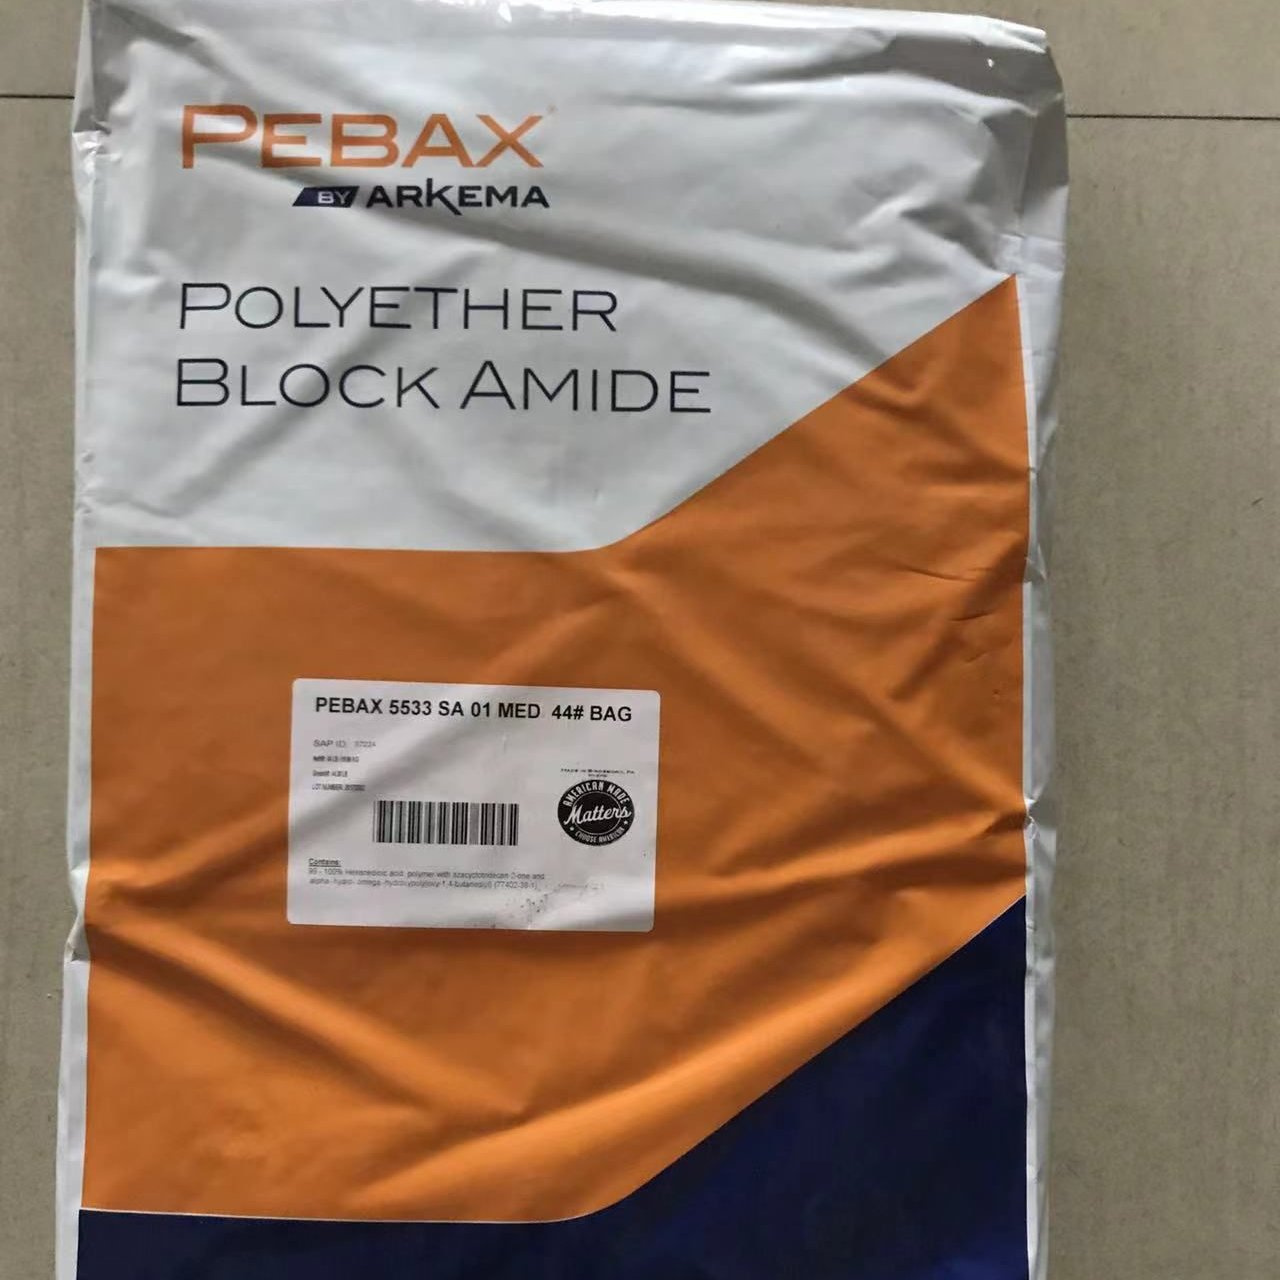 Pebax7033 SA01